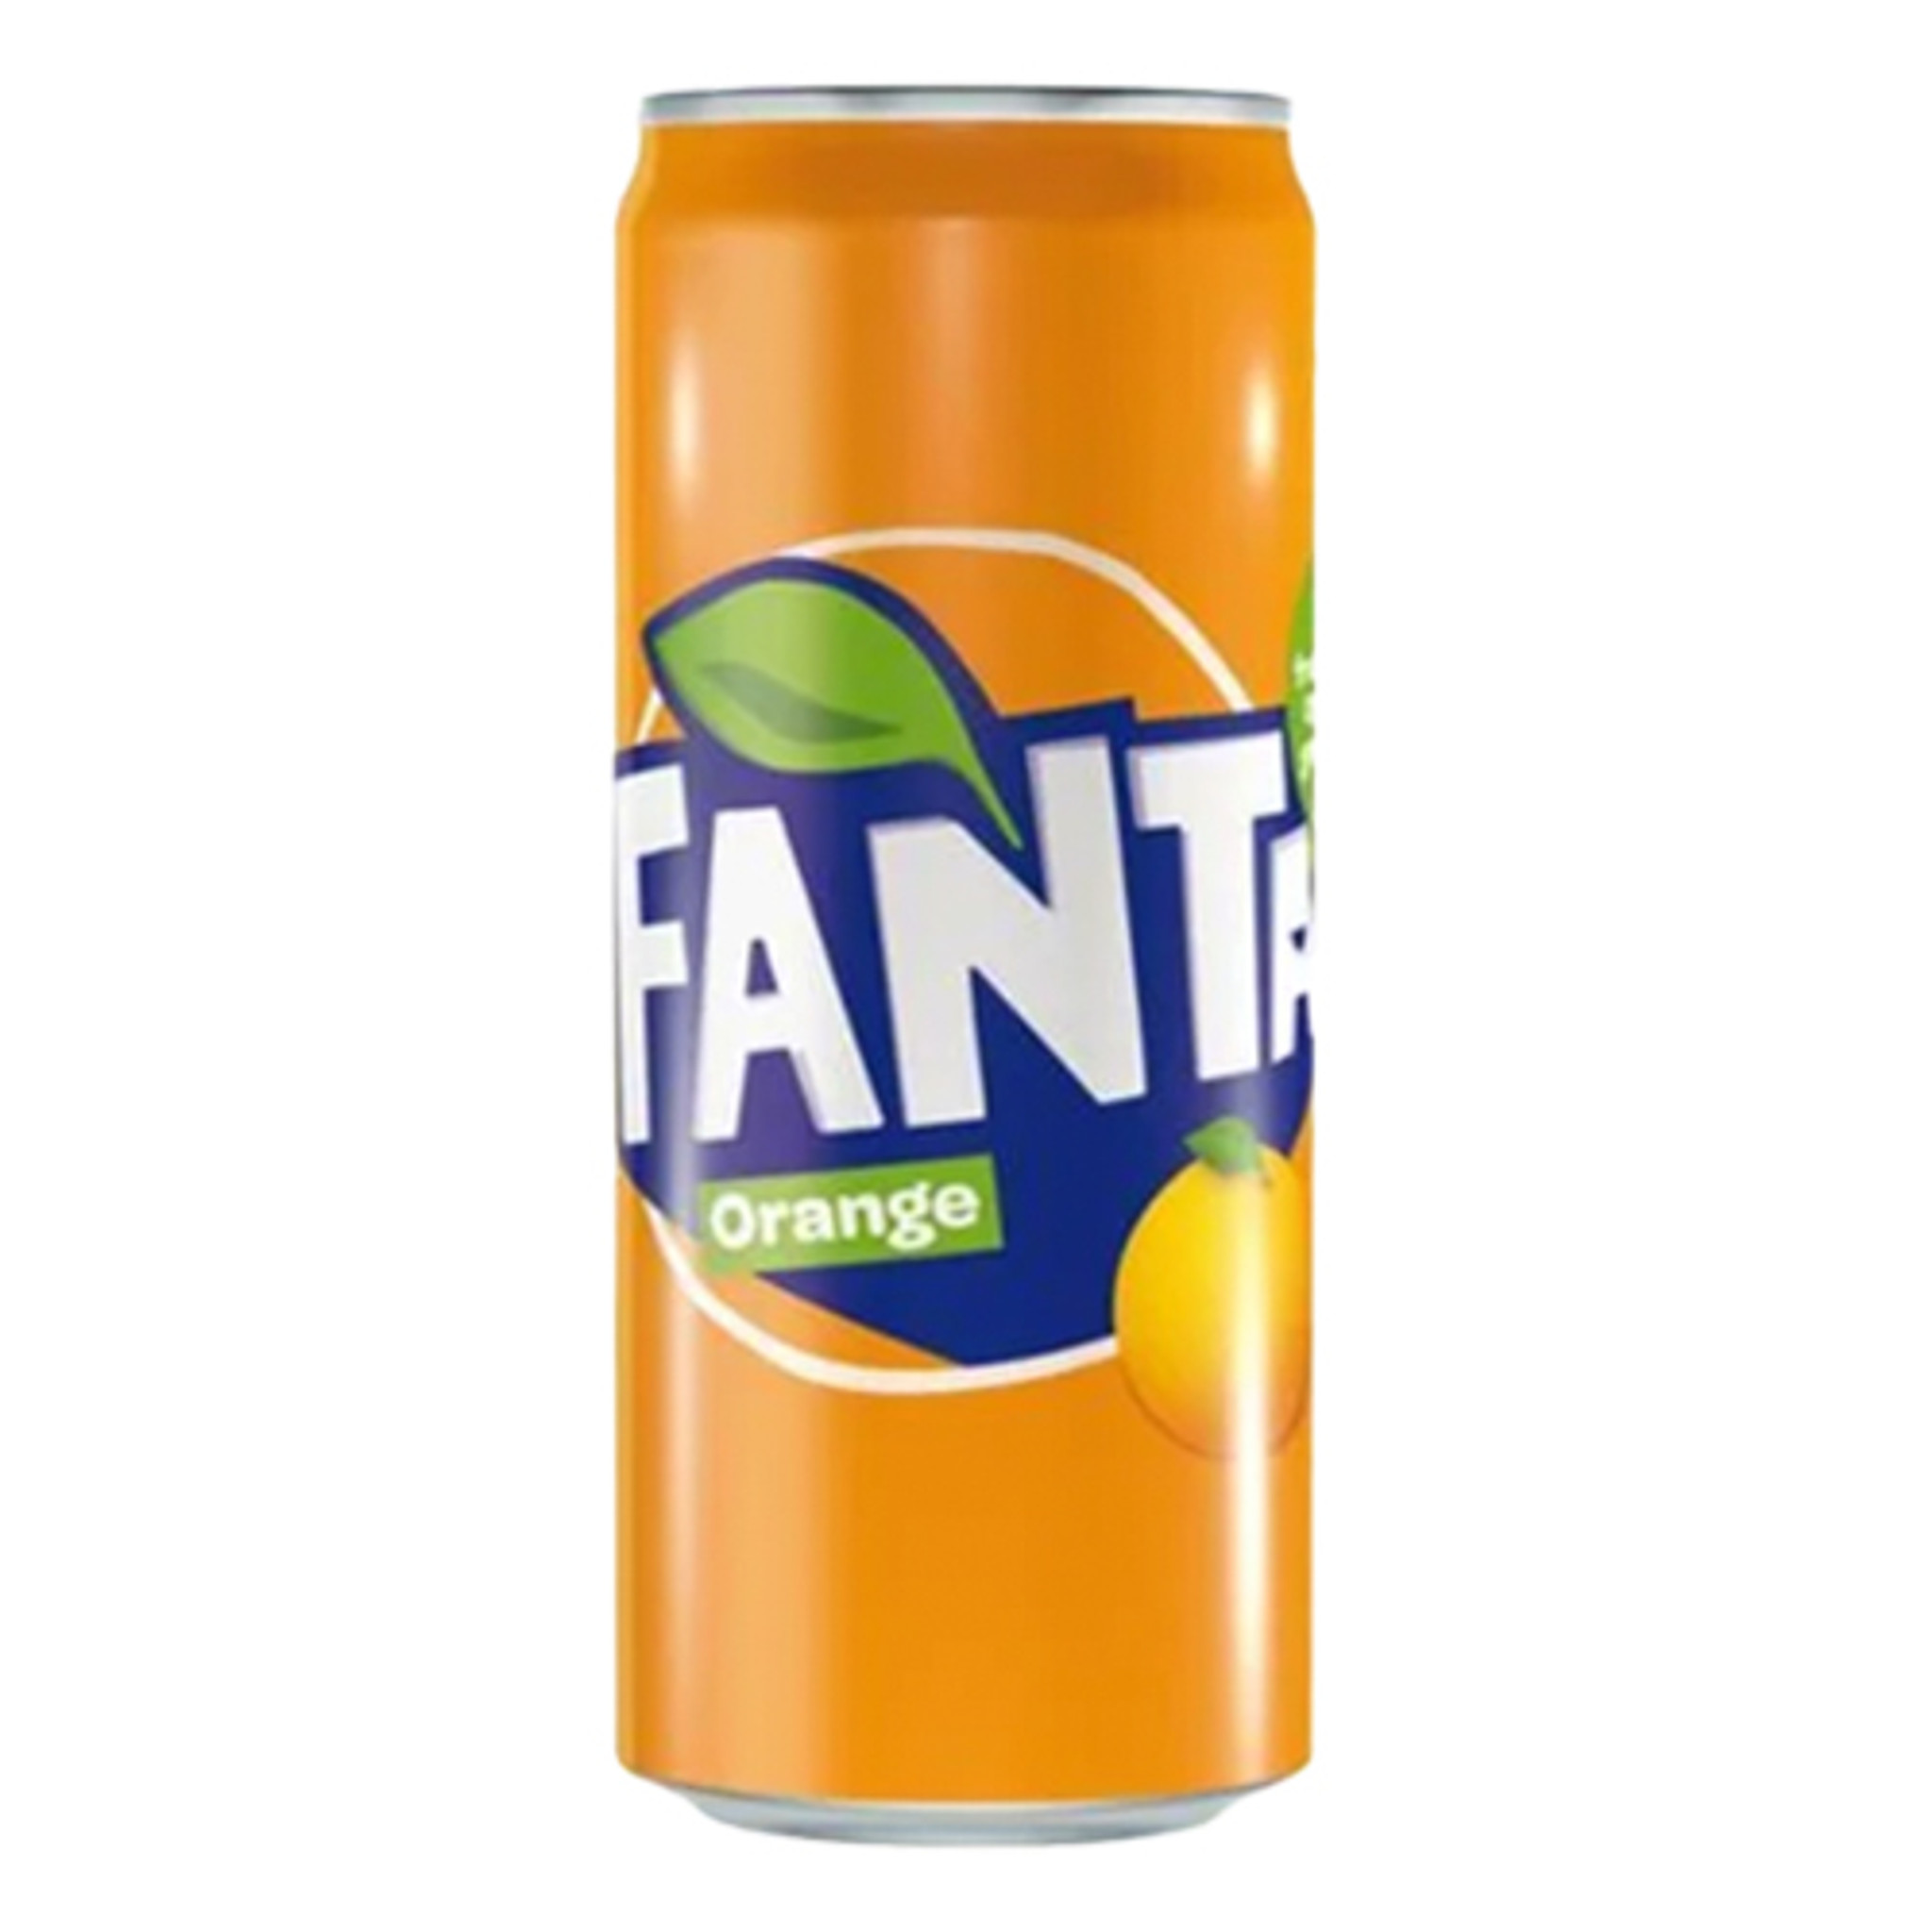 Fanta Orange Soda in oz - 11.2 of Germany Can, bottled Taste in Germany The 